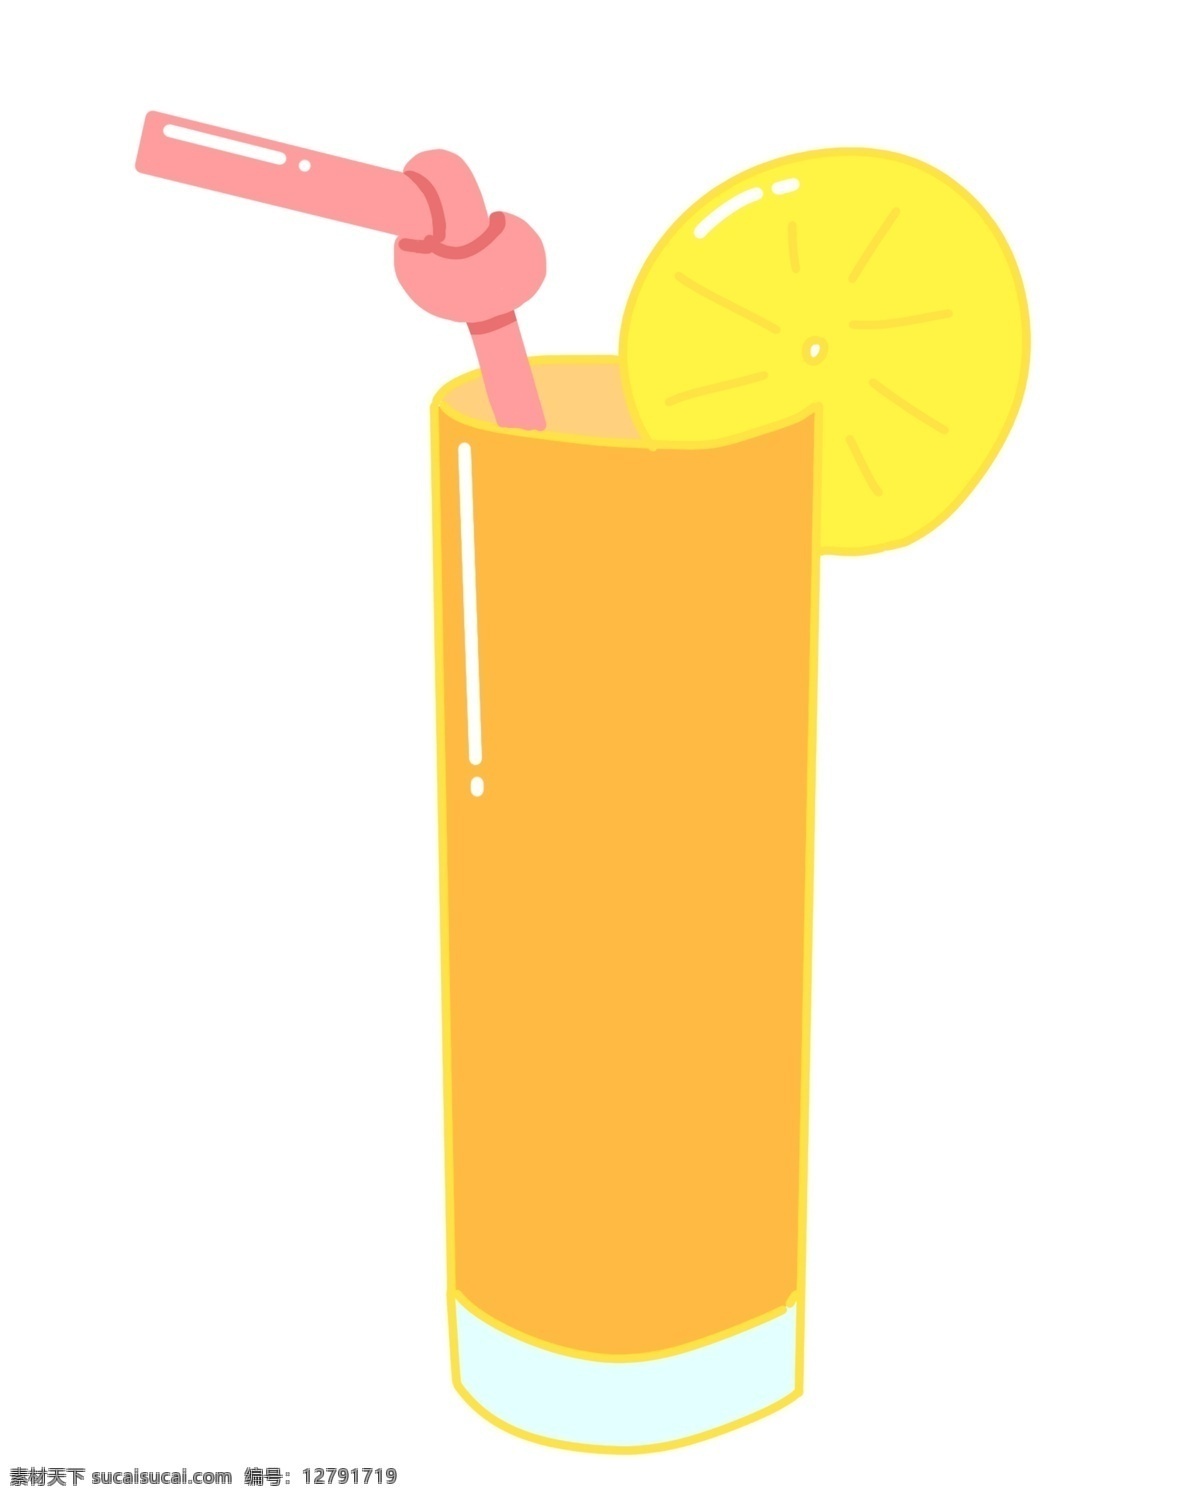 一杯黄色橙汁 橙汁 水果汁 橙子汁